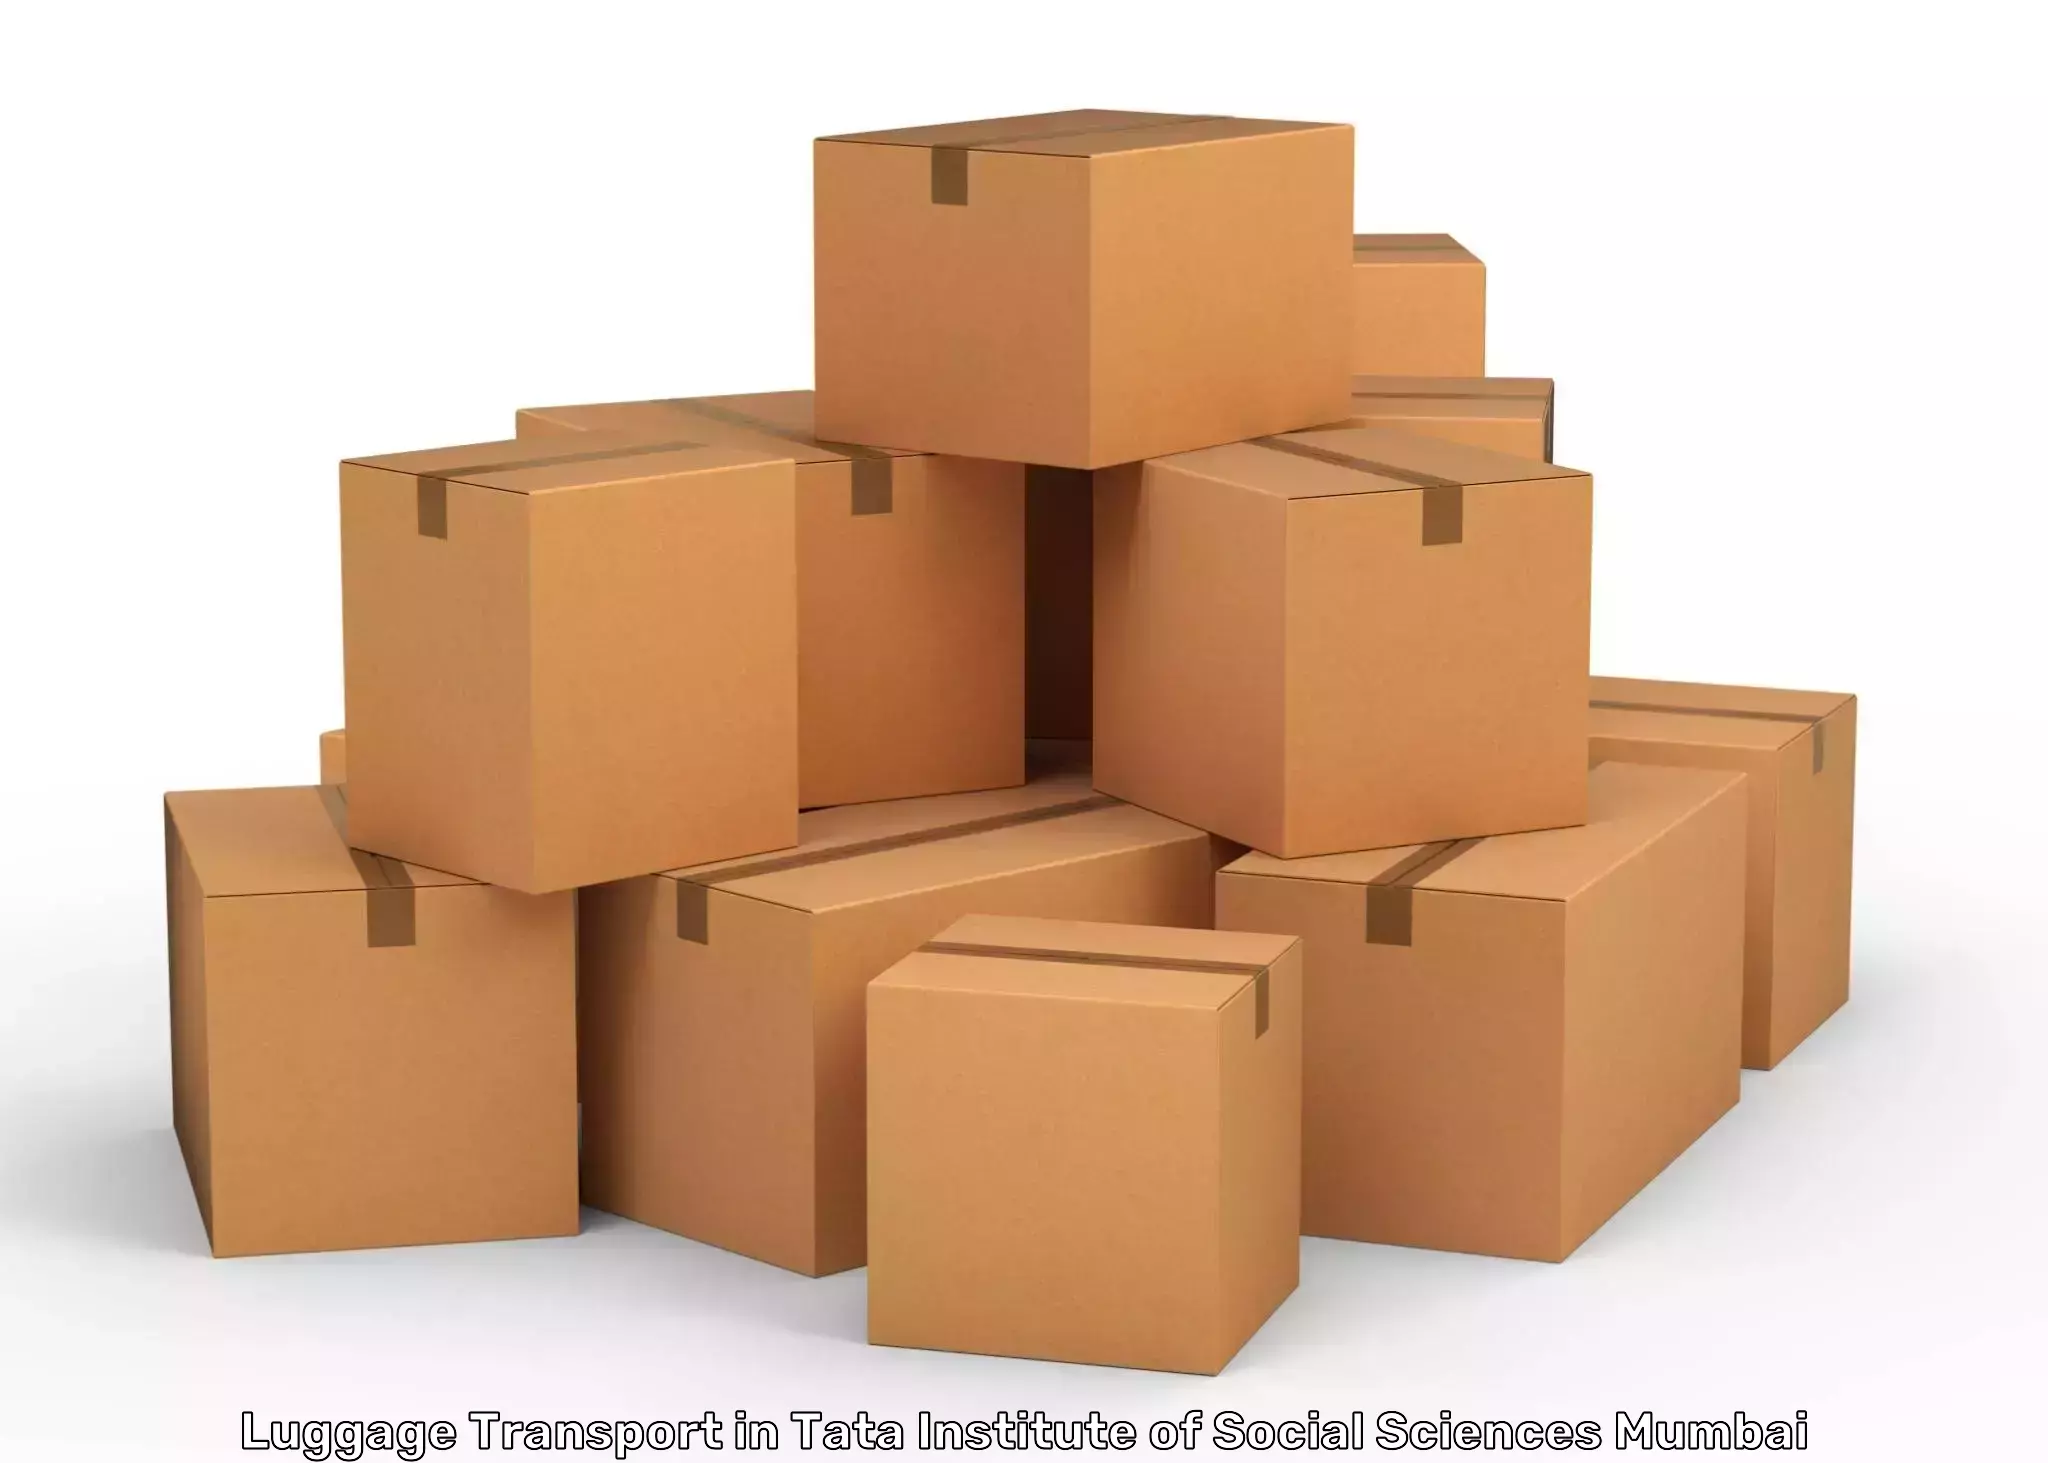 Luggage shipment logistics in Tata Institute of Social Sciences Mumbai